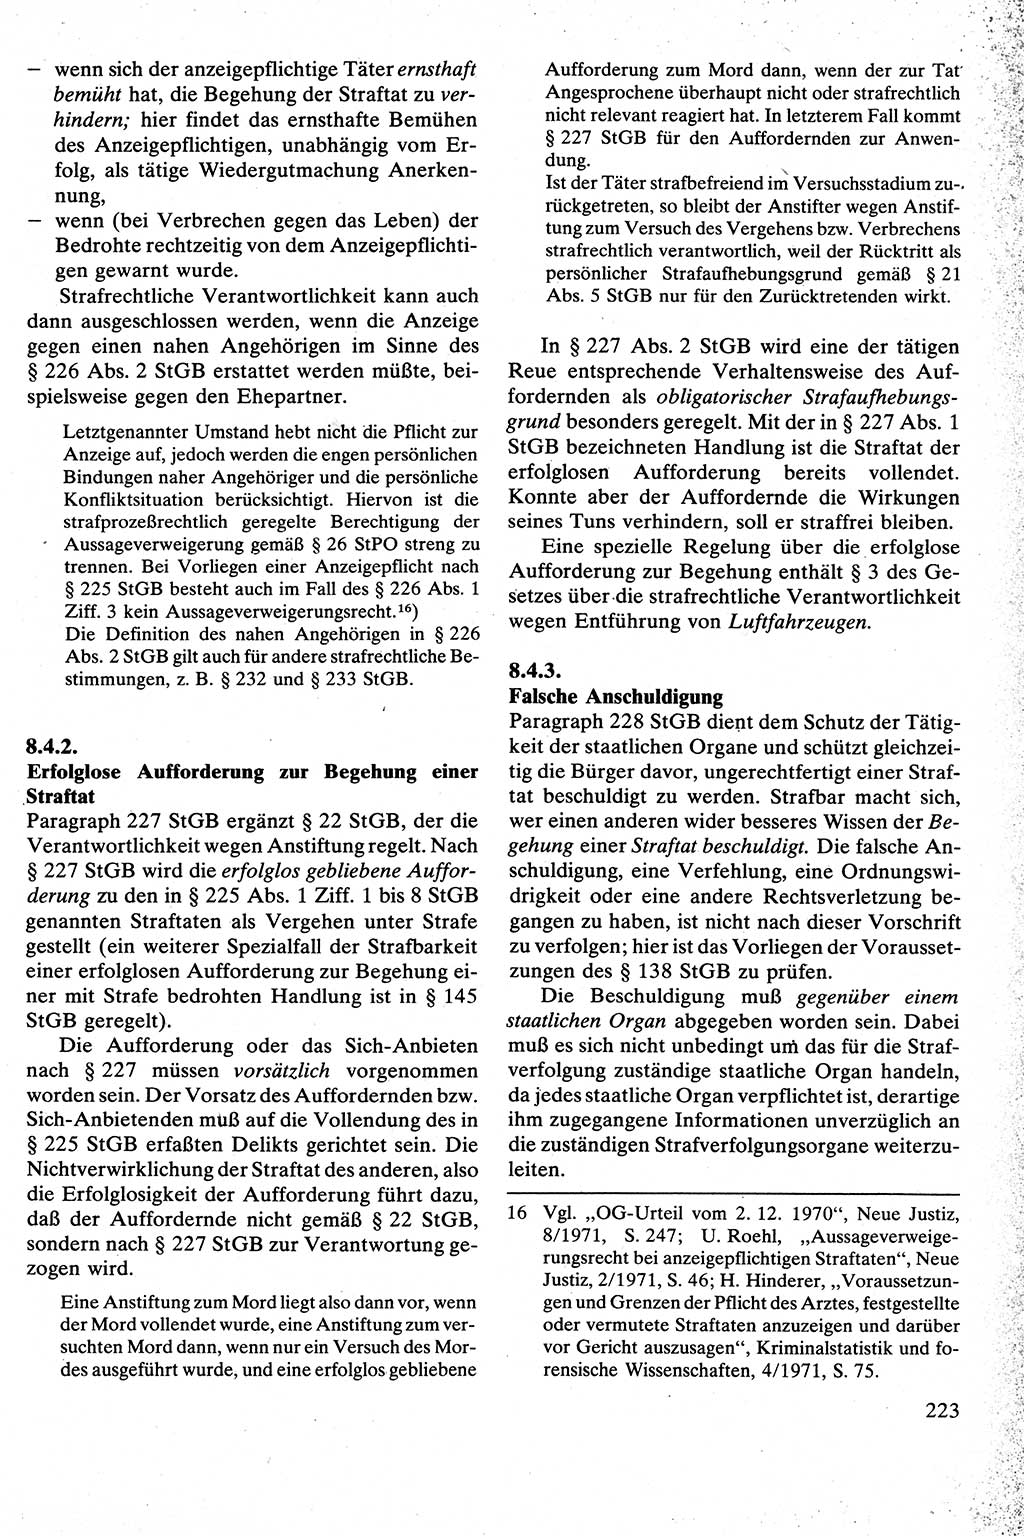 Strafrecht [Deutsche Demokratische Republik (DDR)], Besonderer Teil, Lehrbuch 1981, Seite 223 (Strafr. DDR BT Lb. 1981, S. 223)